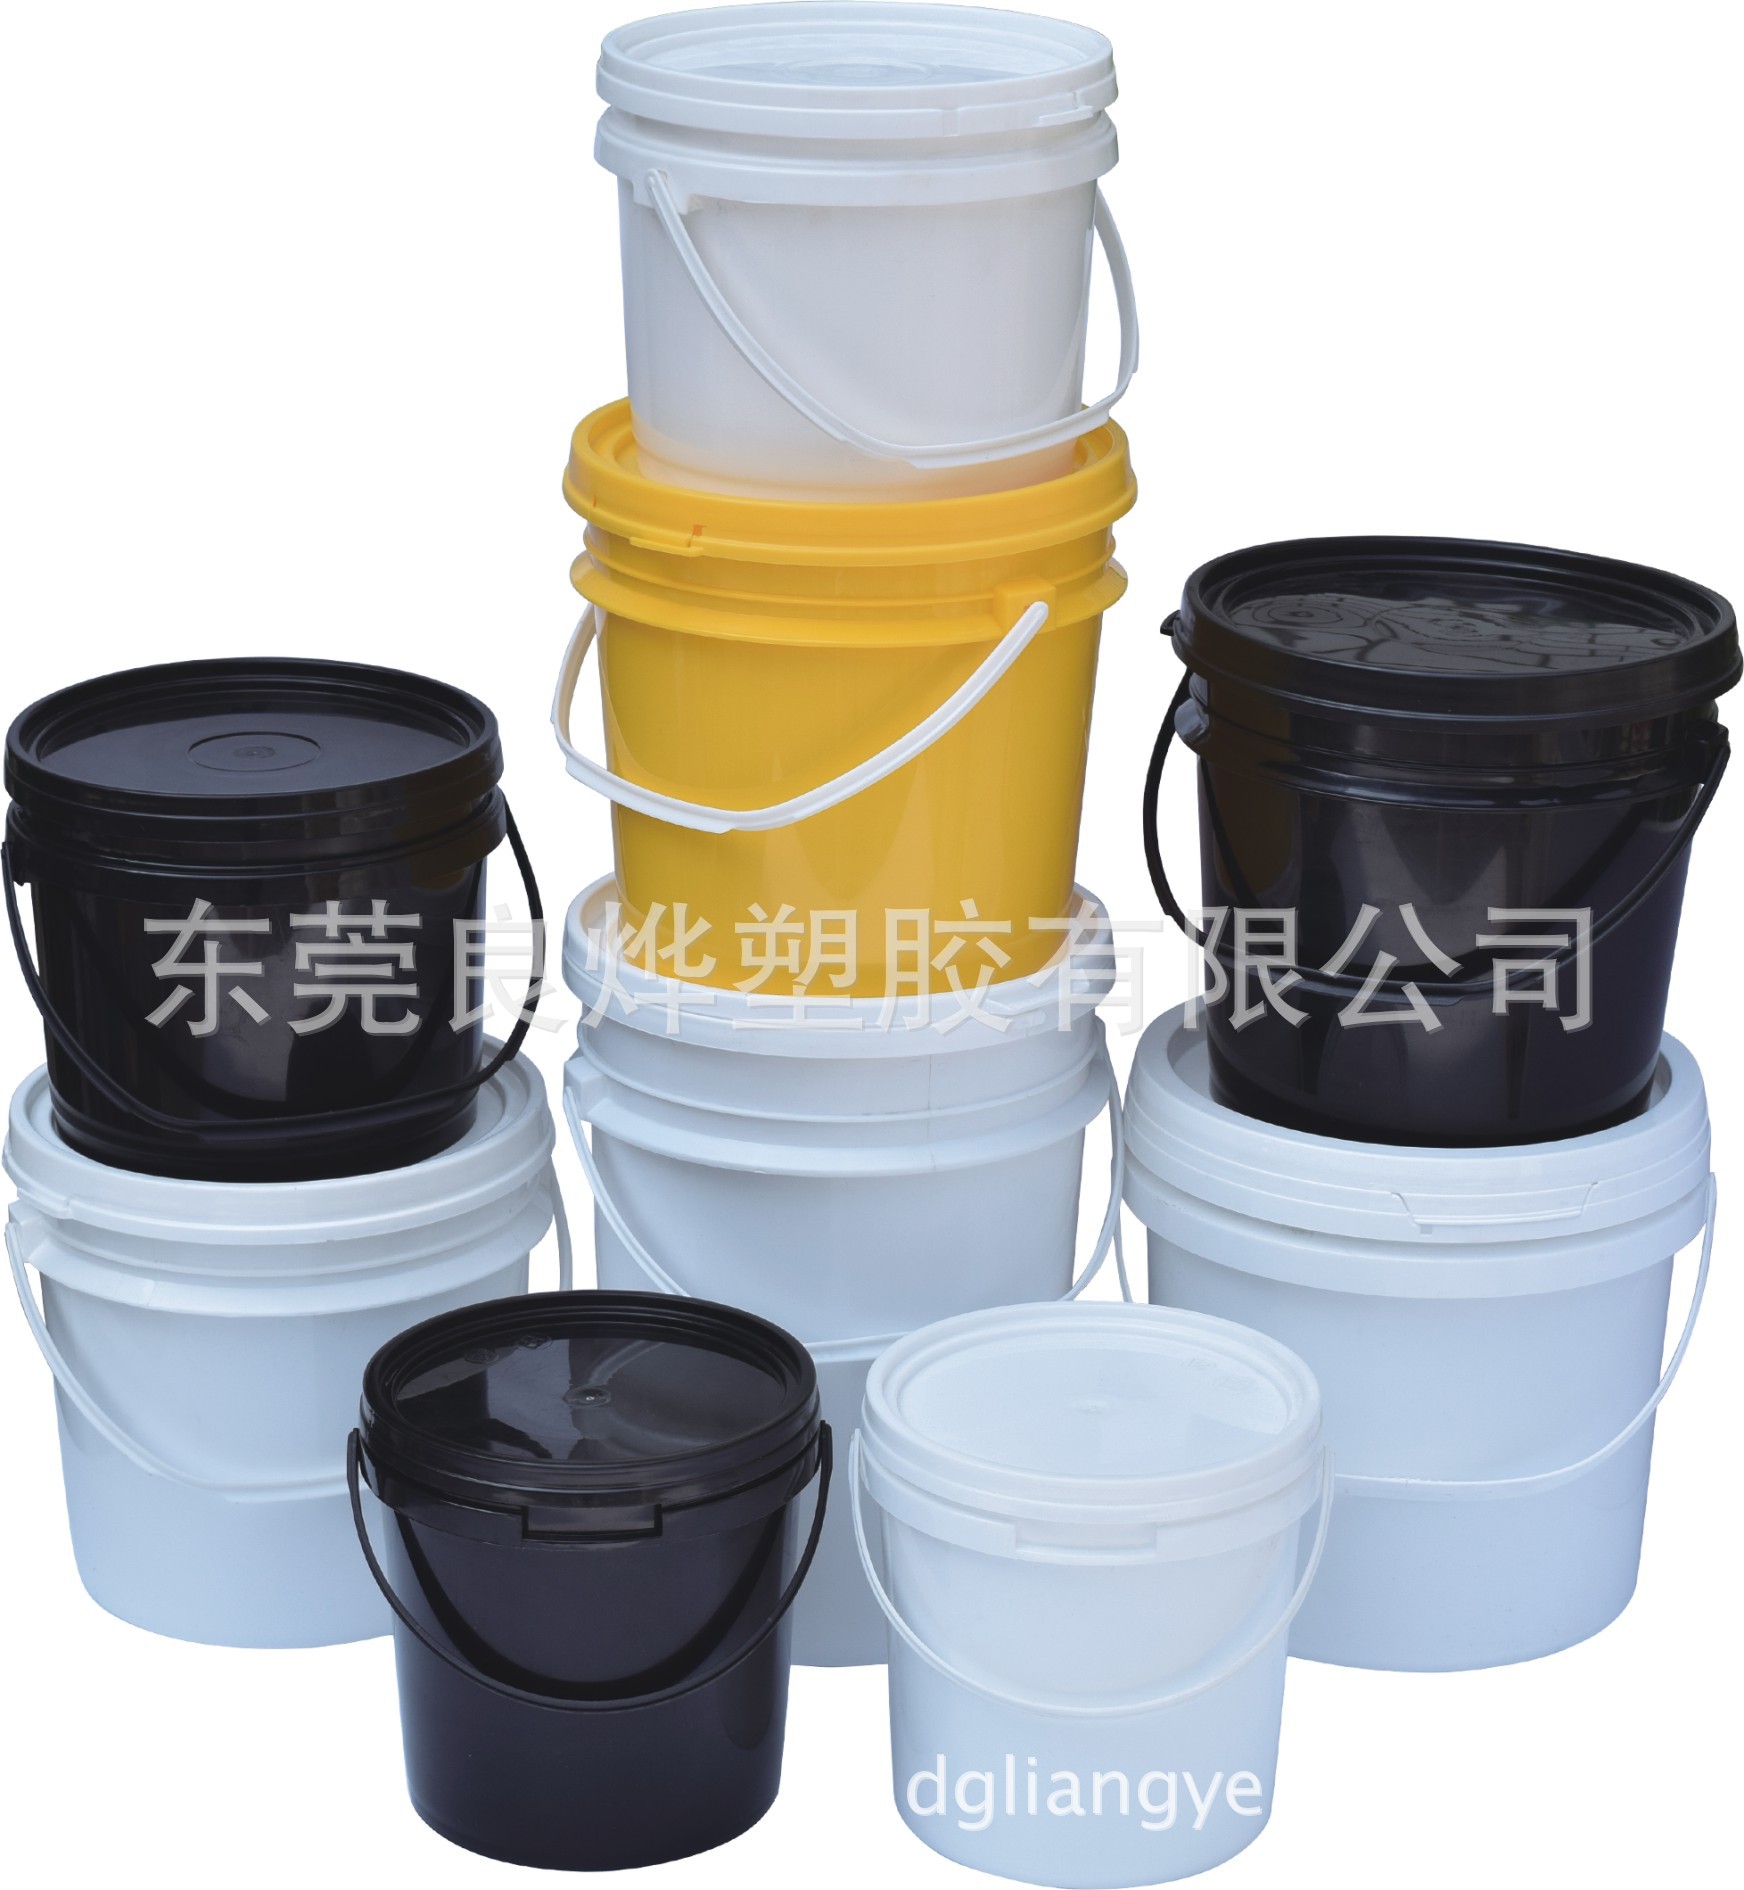 16L硅胶包装桶 耐用粘和剂 电子材料包装桶选择门道 供应硅胶包装桶